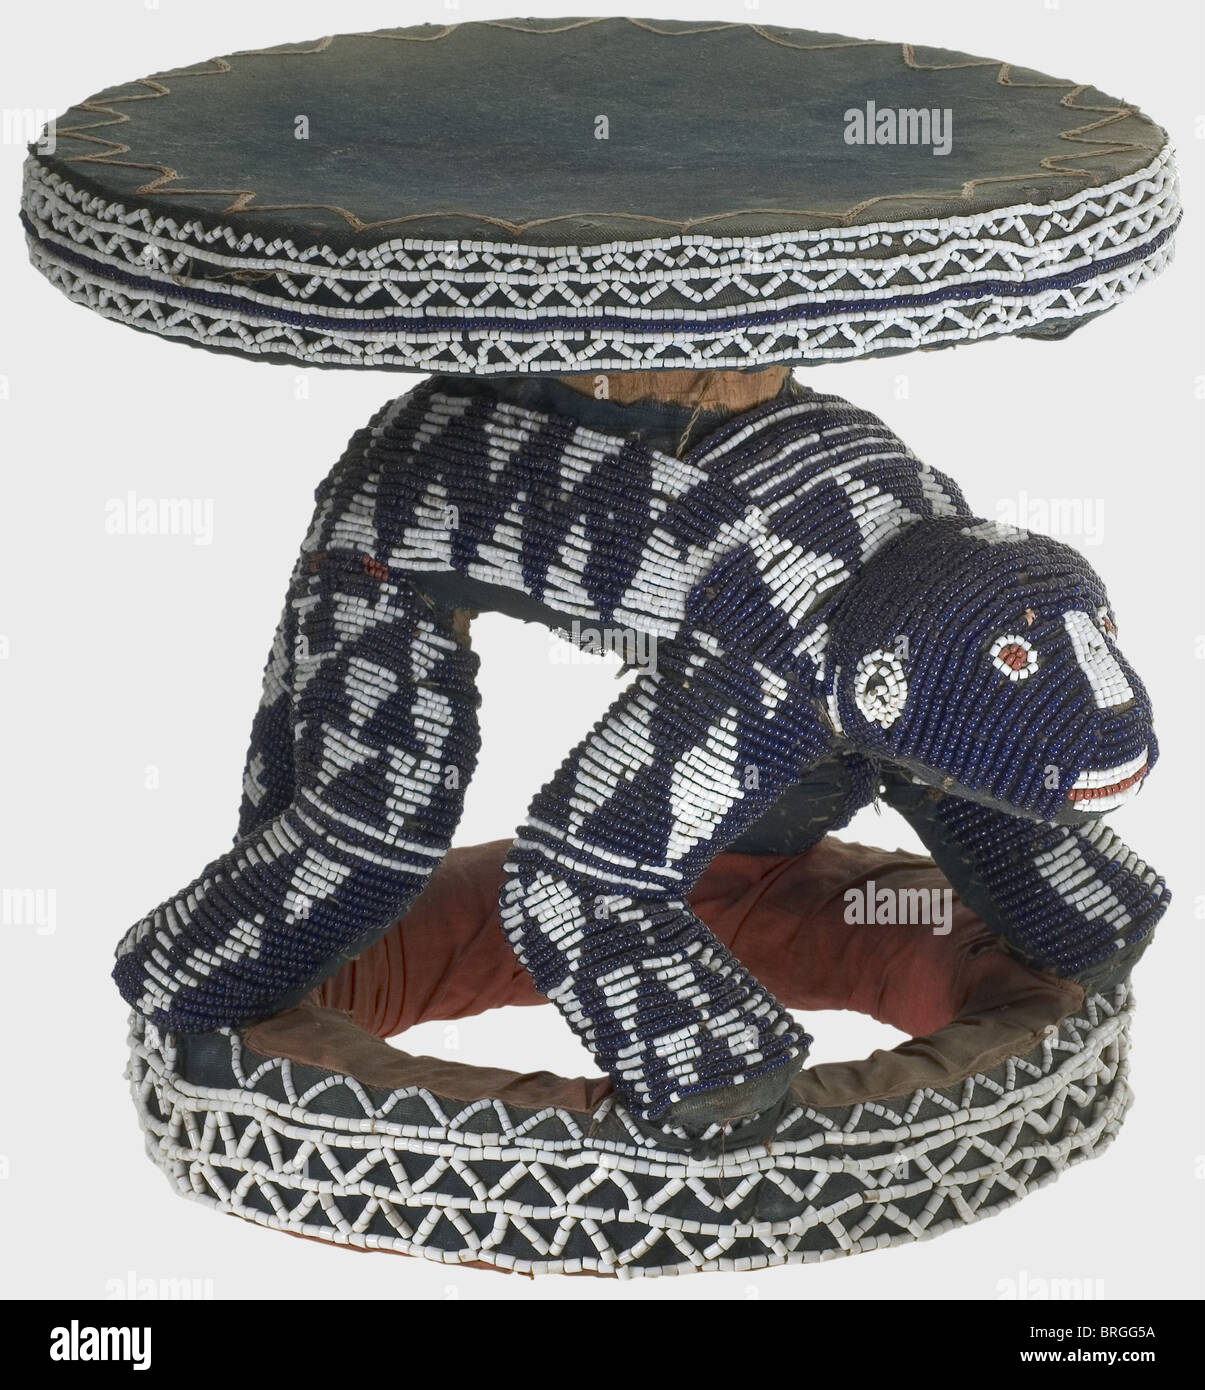 Uno sgabello cerimoniale di Bambileke, Camerun, praterie, prima del 1920 un sedile rotondo su figure brucciate leopardo, base circolare. Parzialmente ricoperto di tessuto blu e rosso e ricamato con perline blu e bianche. Panno leggermente sbiancato, segni di usura e di età. Altezza 35 cm. Diametro della seduta 36 cm. I Bambileke considerano il leopardo un simbolo di potere, con stretti legami con la persona del loro re. Cf Nord, Arte del Camerun, Ill. 155. Provenienza: Da una collezione tedesca, assemblata prima del 1920. Vedi anche: Asta di Sotheby's New York,Arte dell'Africa,Oc,diritti aggiuntivi-clearences-non disponibile Foto Stock